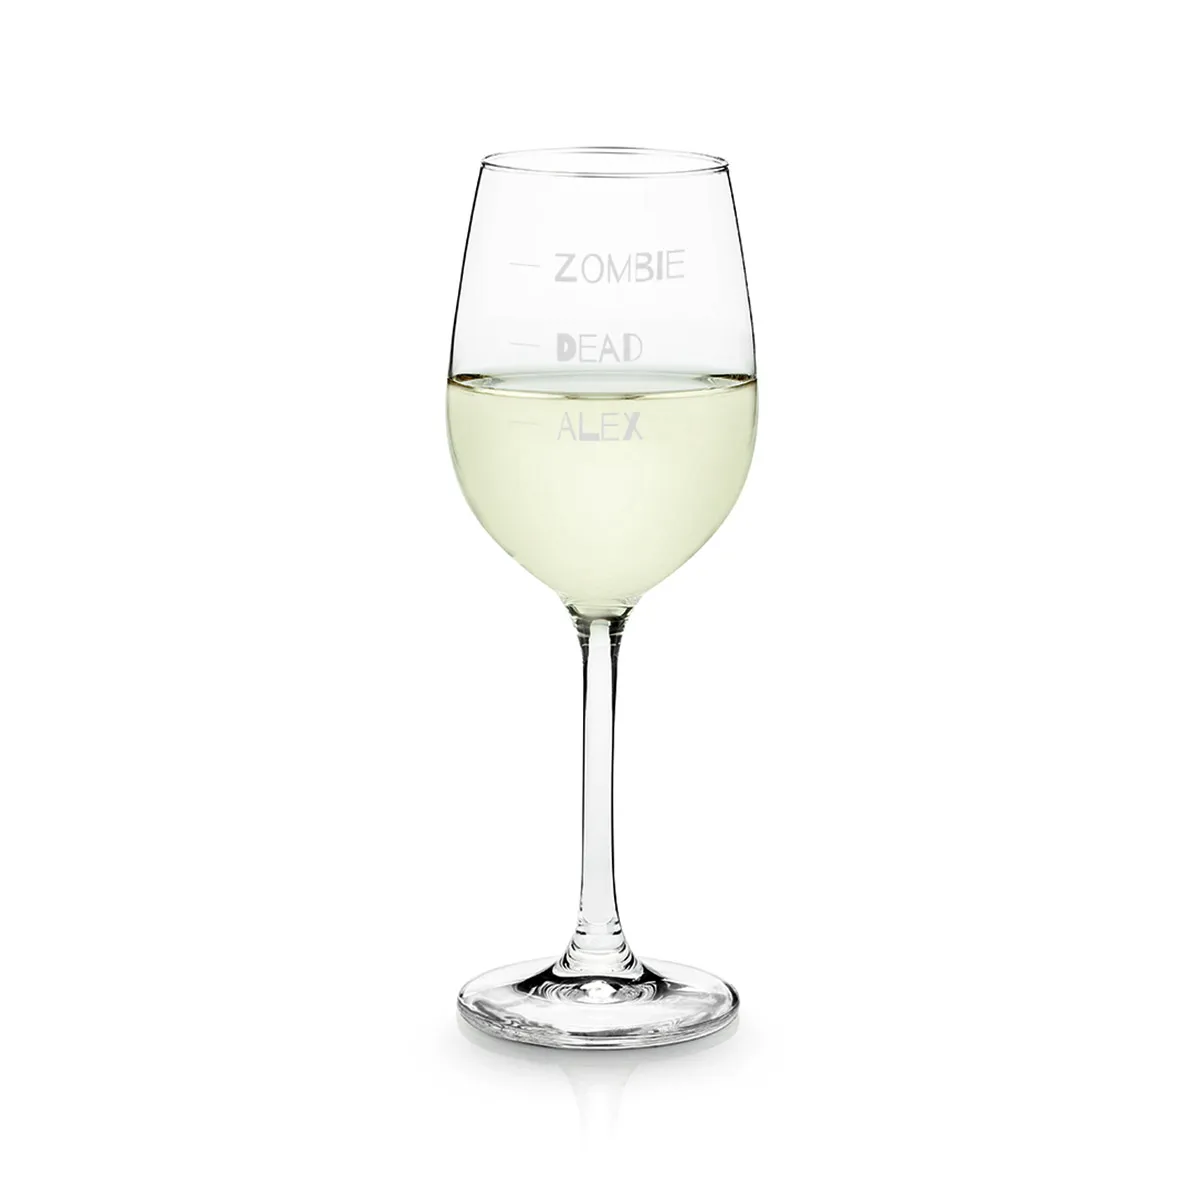 Das perfekte Weinglas für die Halloweenparty